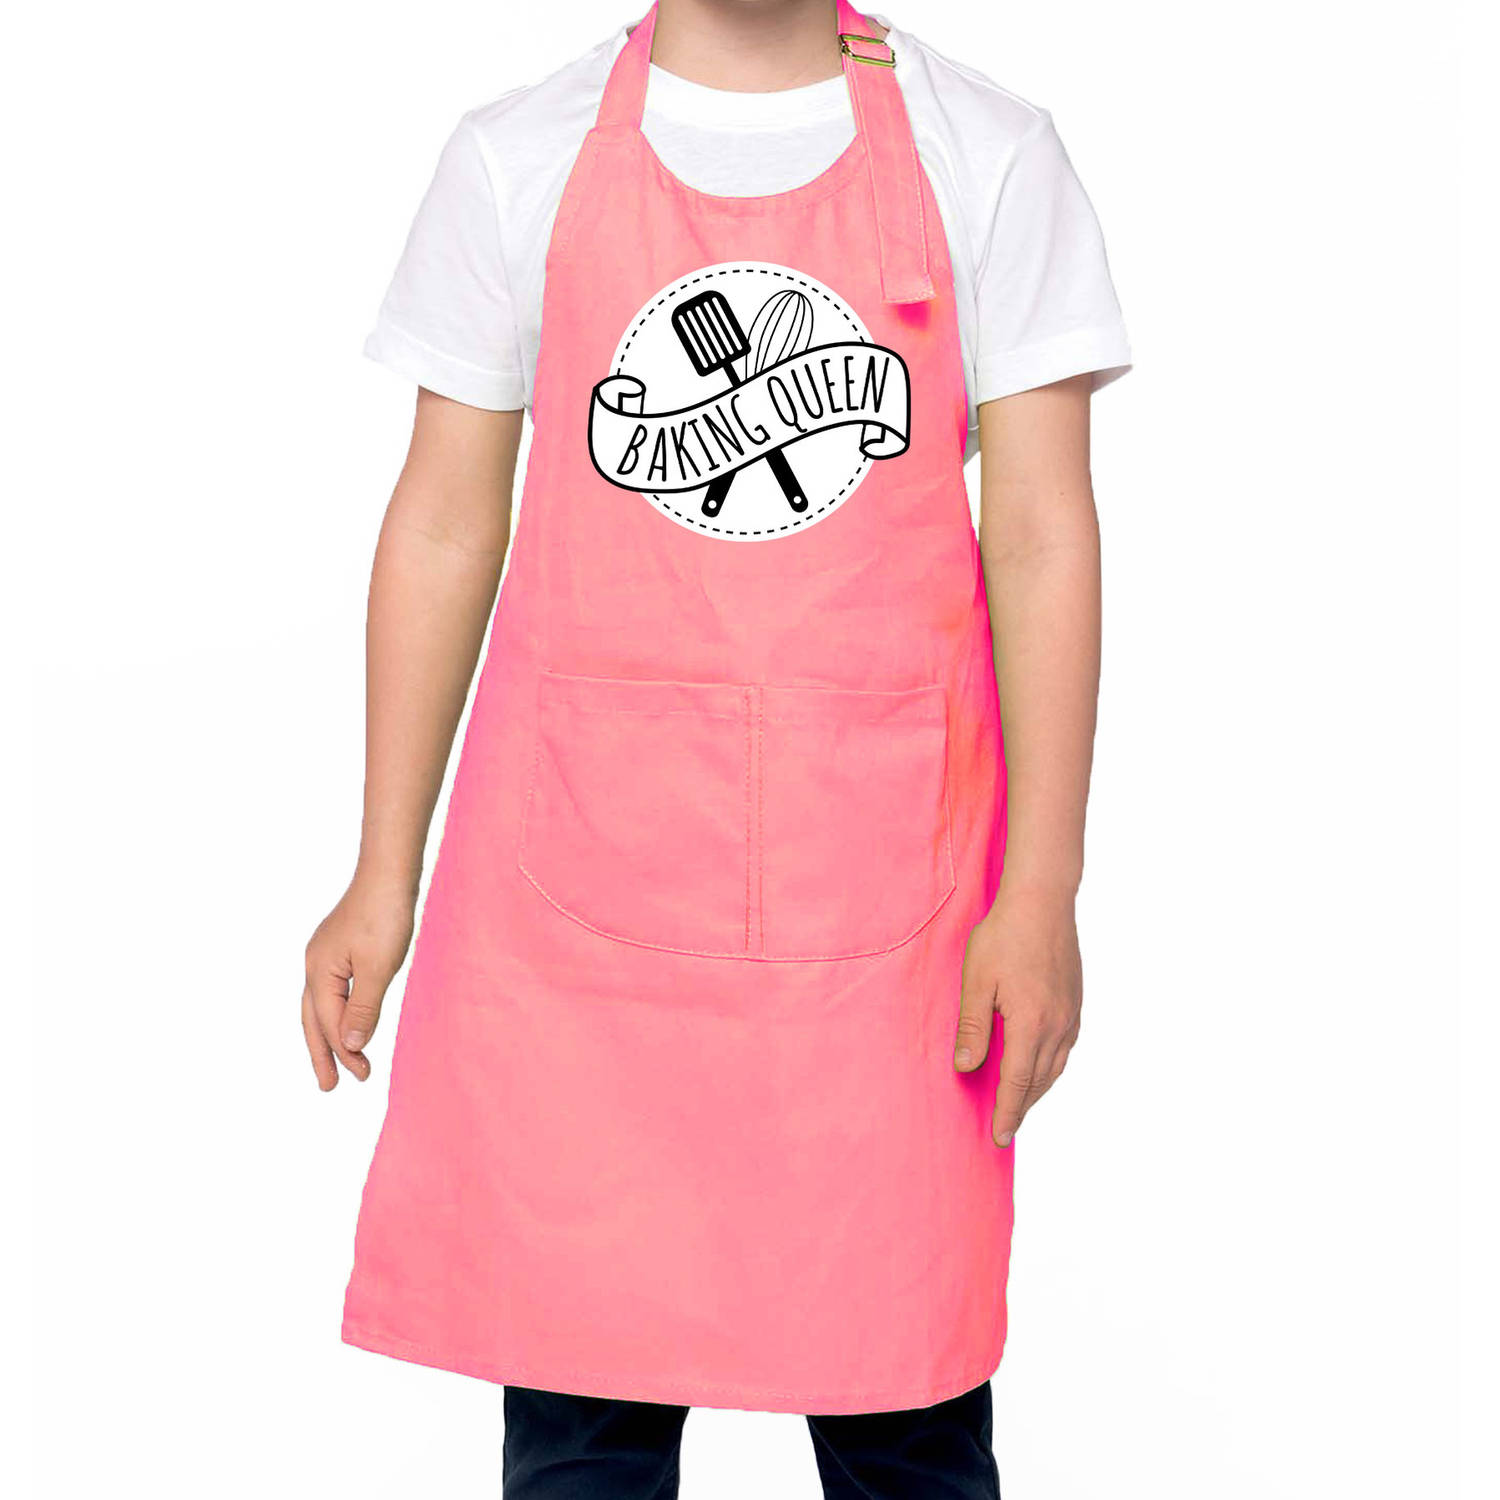 Baking Queen Bak Keukenschort- Kinderschort Roze Voor Meisjes Bakken Met Kinderen Feestschorten